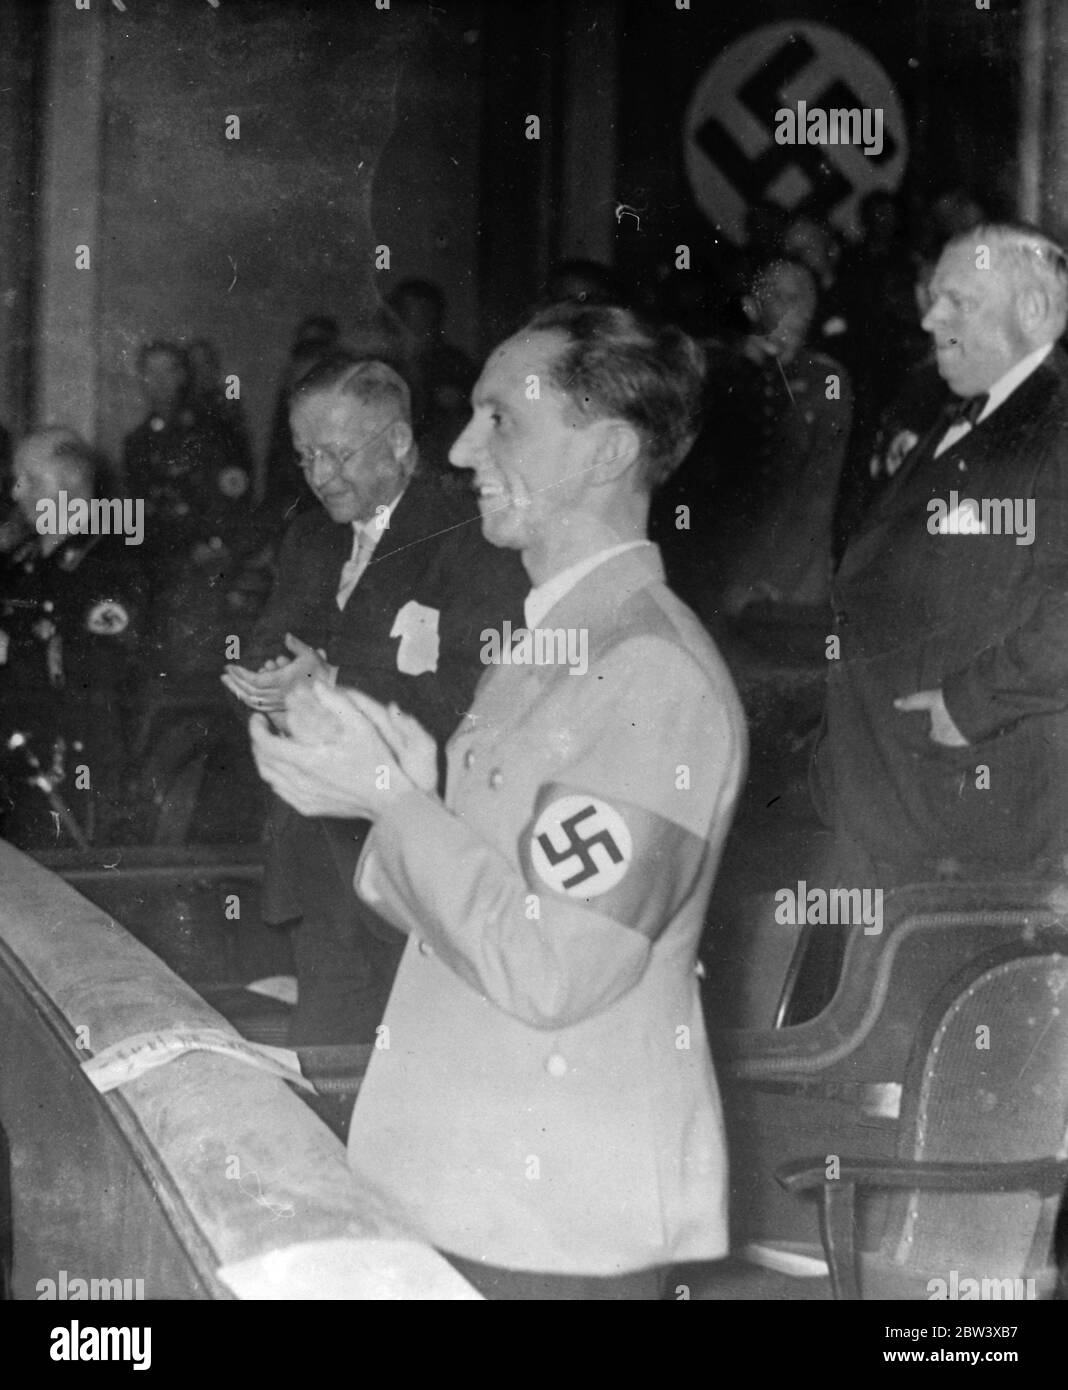 Il sig. Goebbels applaude' Traitor'. Il Dr. Josef Goebbels , Ministro tedesco di Propaganda , il cui nuovo attacco al bolscevismo e agli ebrei al Congresso nazista ha sconvolto il mondo , Sorrisi e applaude alla prima del film tedesco EW ' Traitor ' che si è svolto a Norimberga in connessione con il Congresso. 11 settembre 1936 Foto Stock